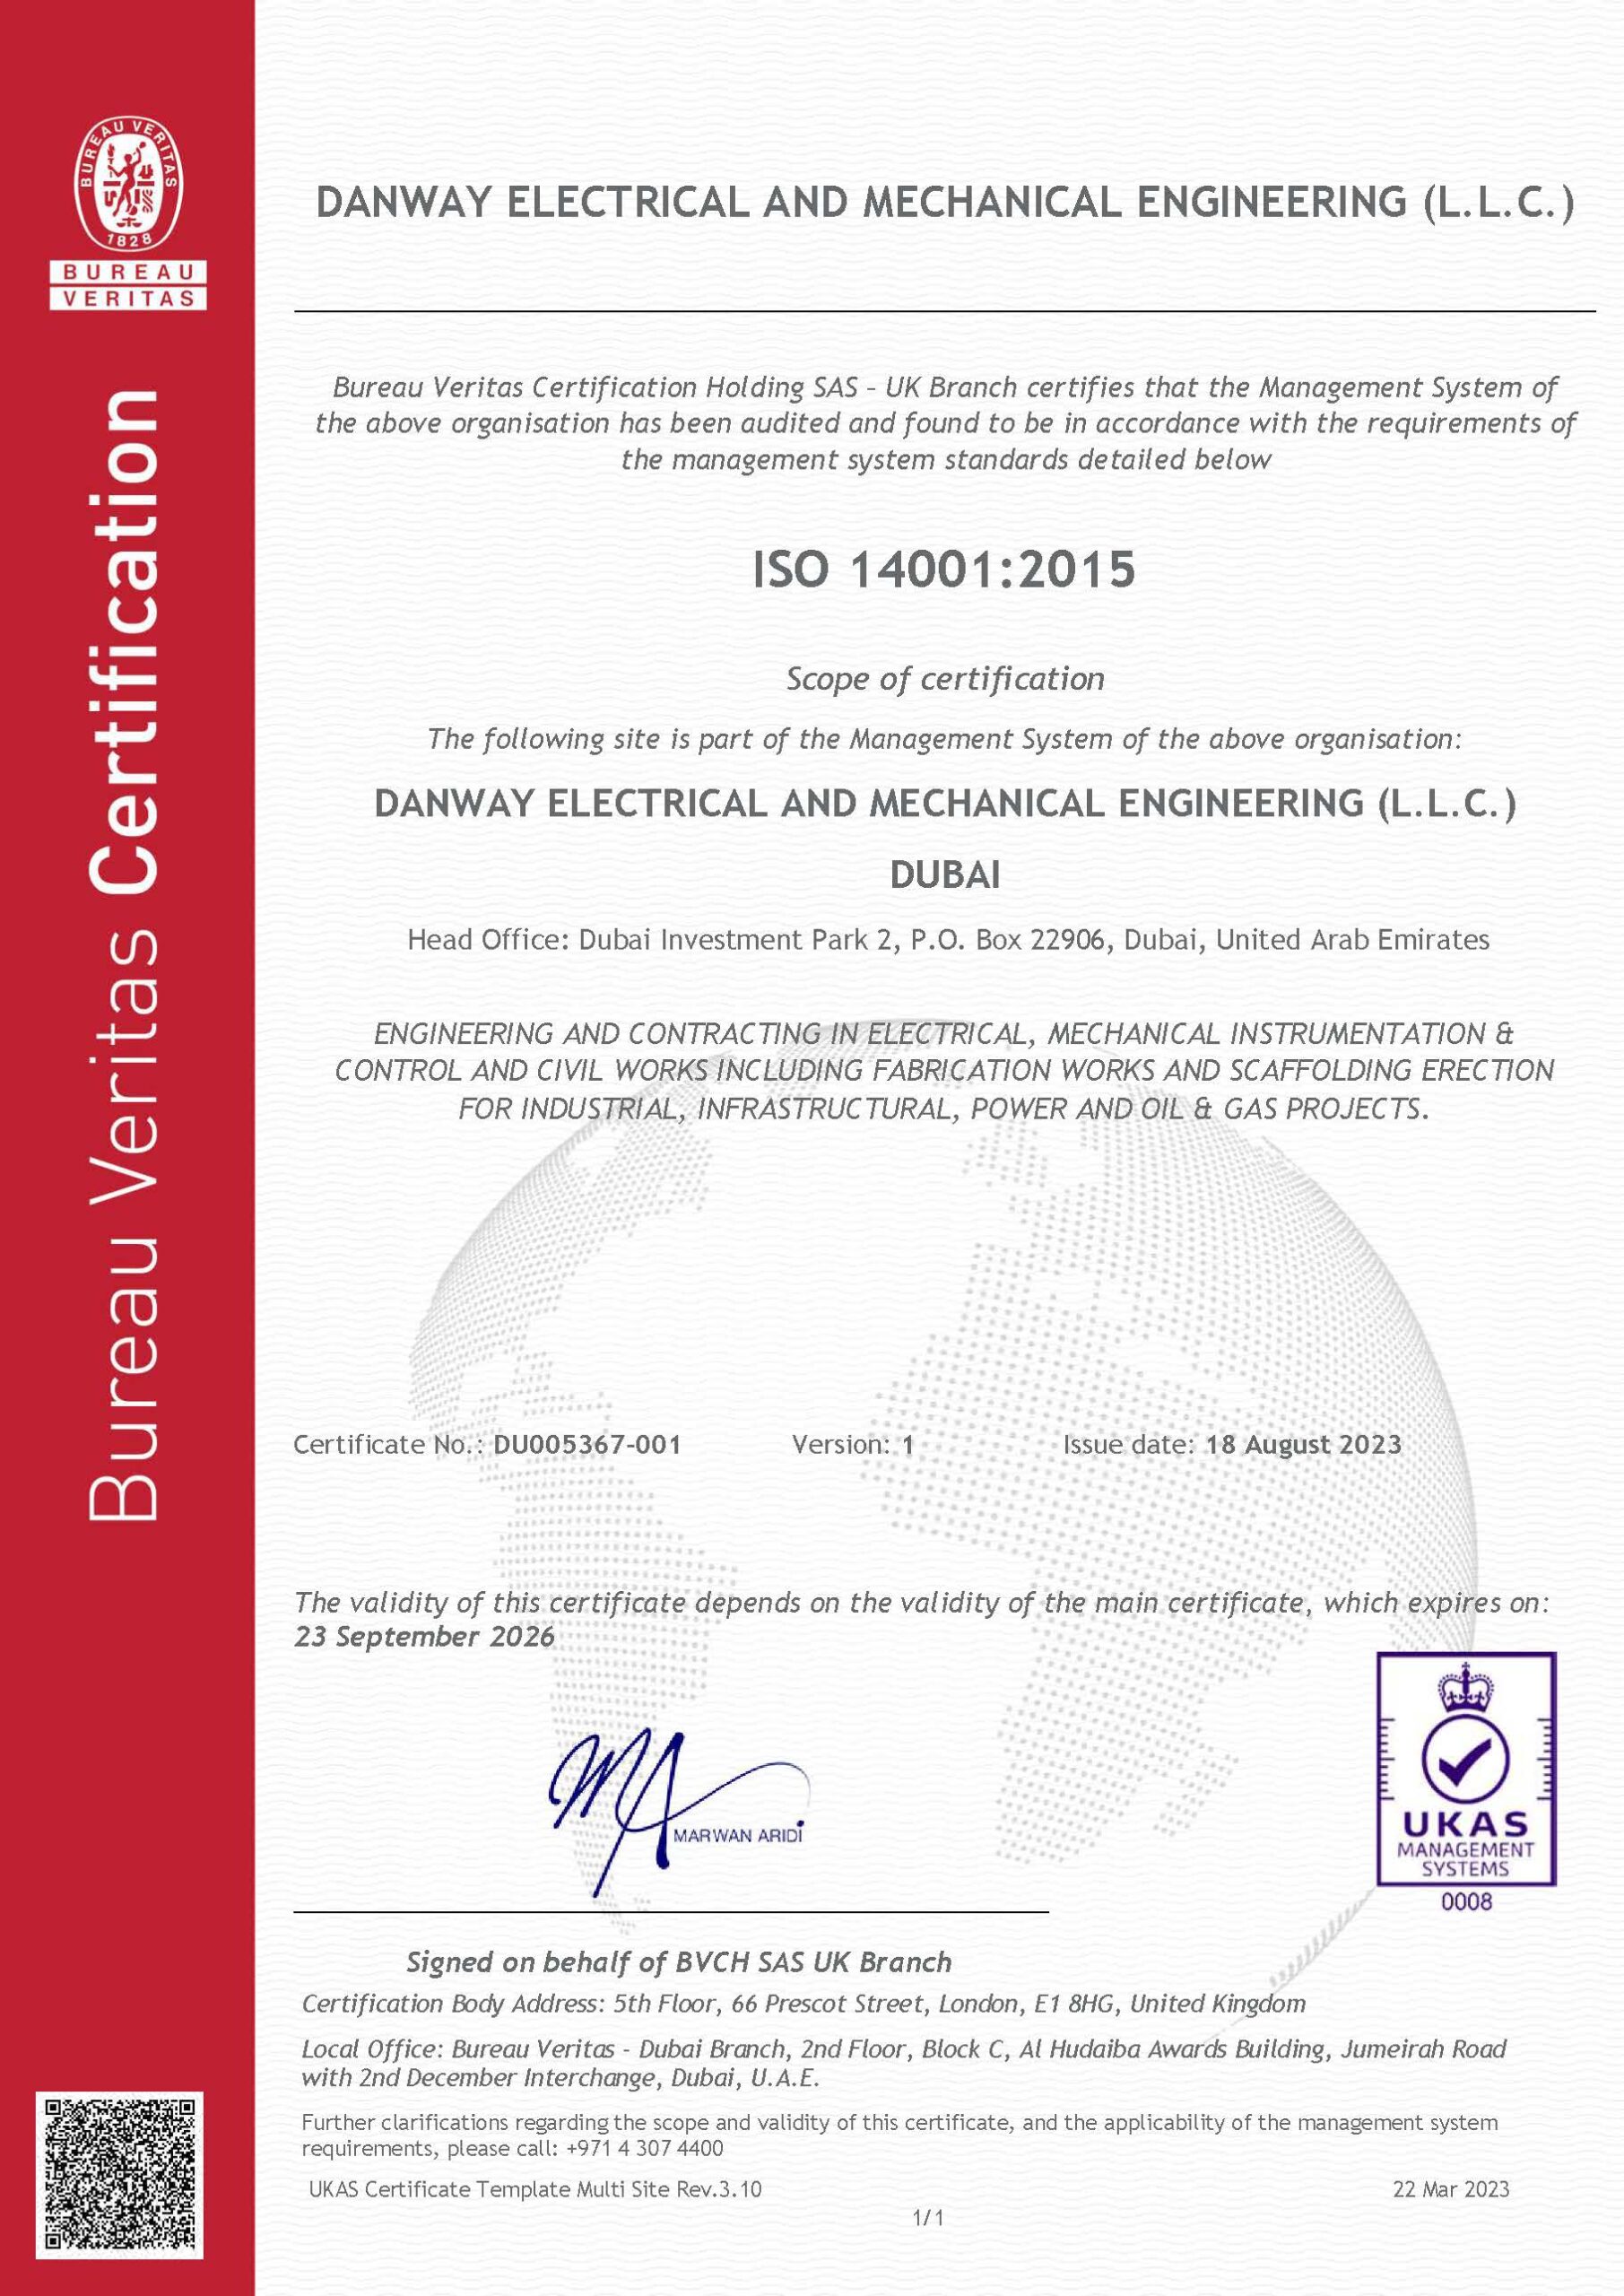 ISO14001:2015 Danway EME, Dubai